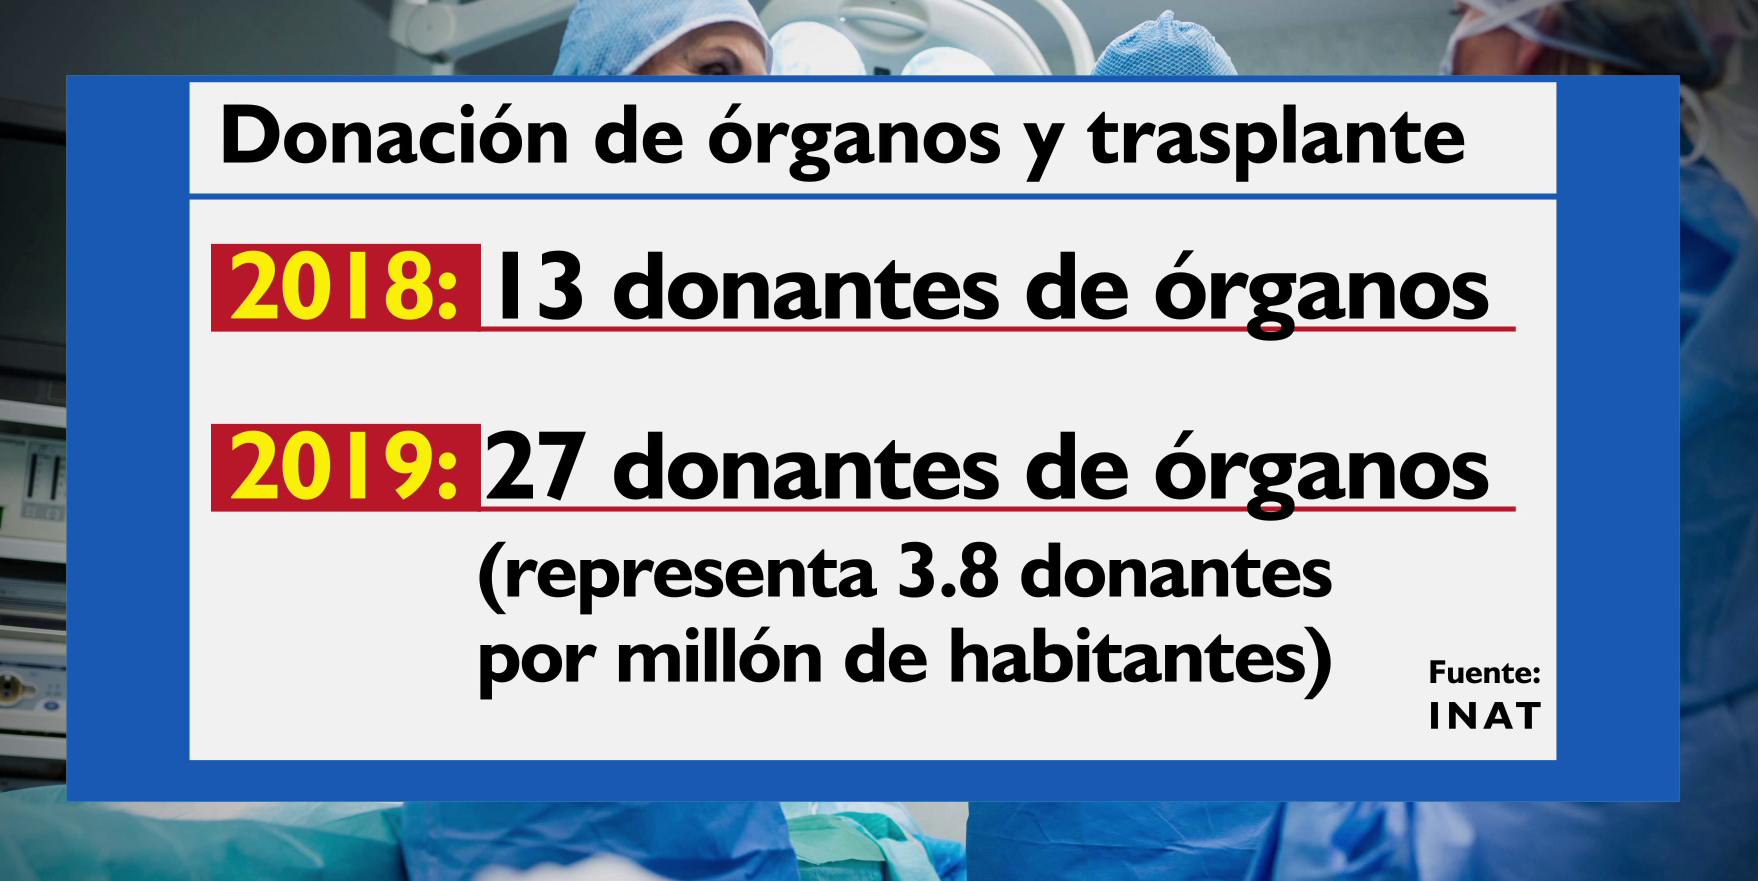 Este 2019 se registraron ya 27 donantes de órganos, según el INAT.